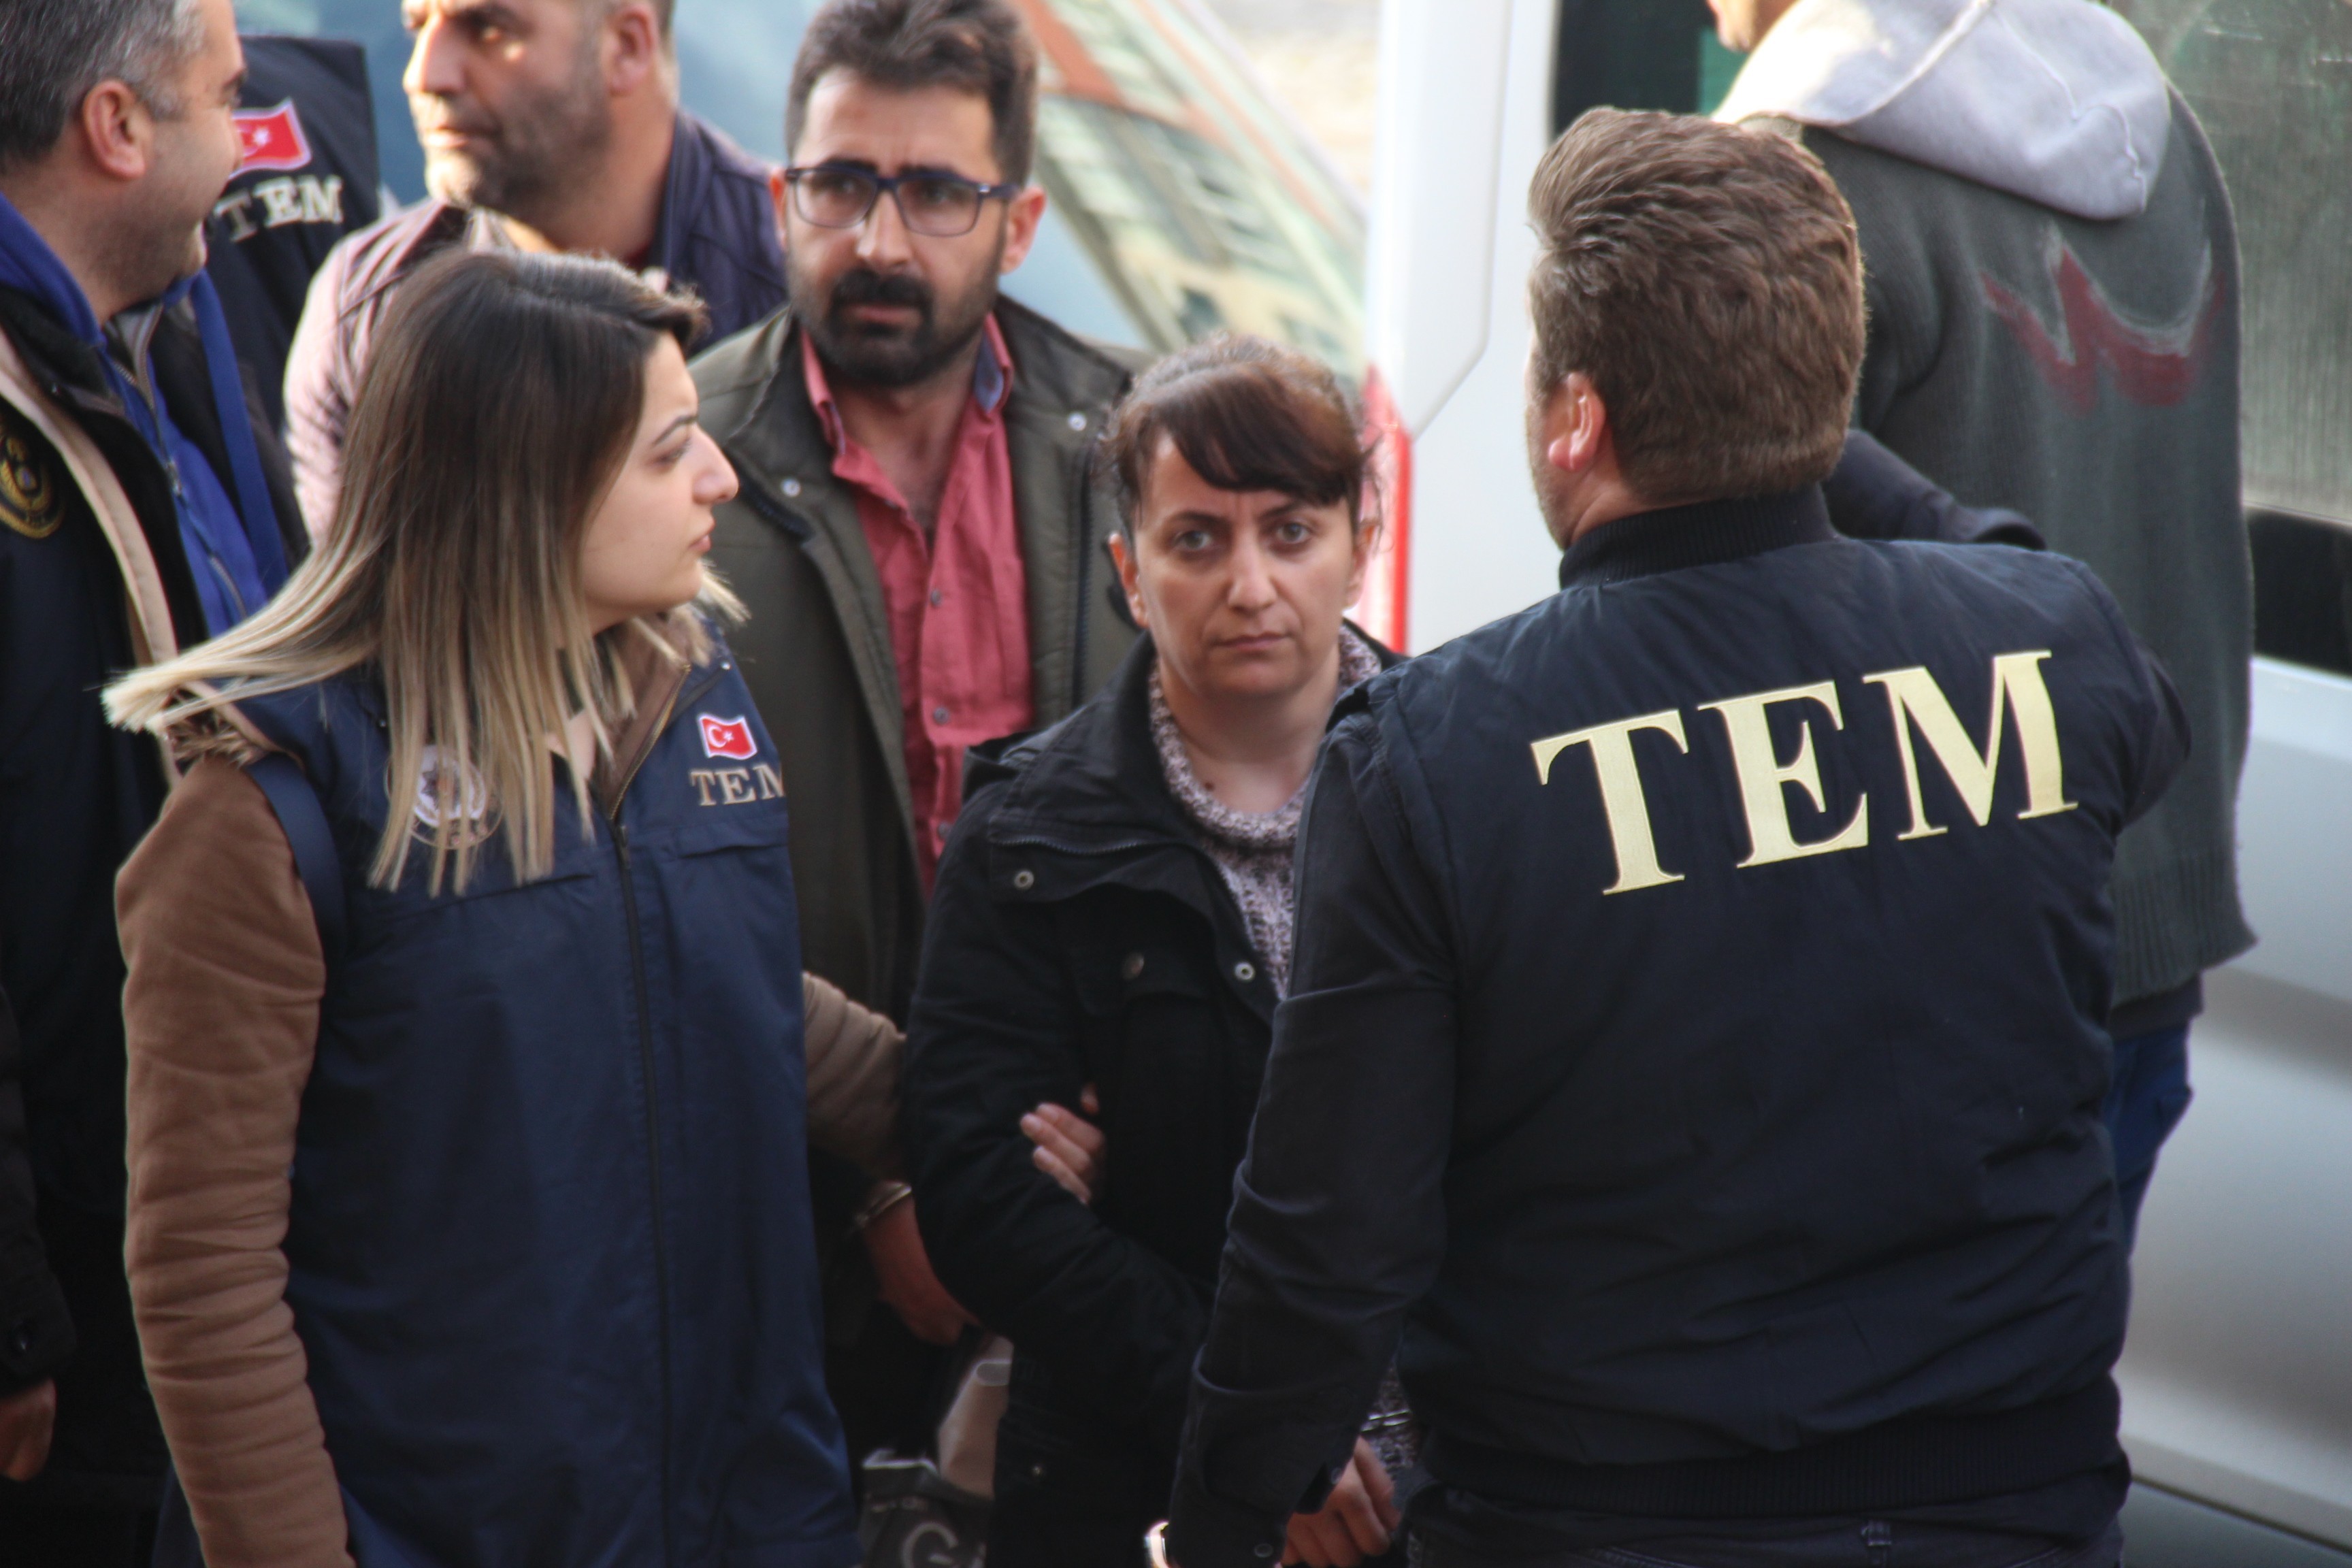 Kocaeli’de HDP İl Eş Başkanı tutuklandı